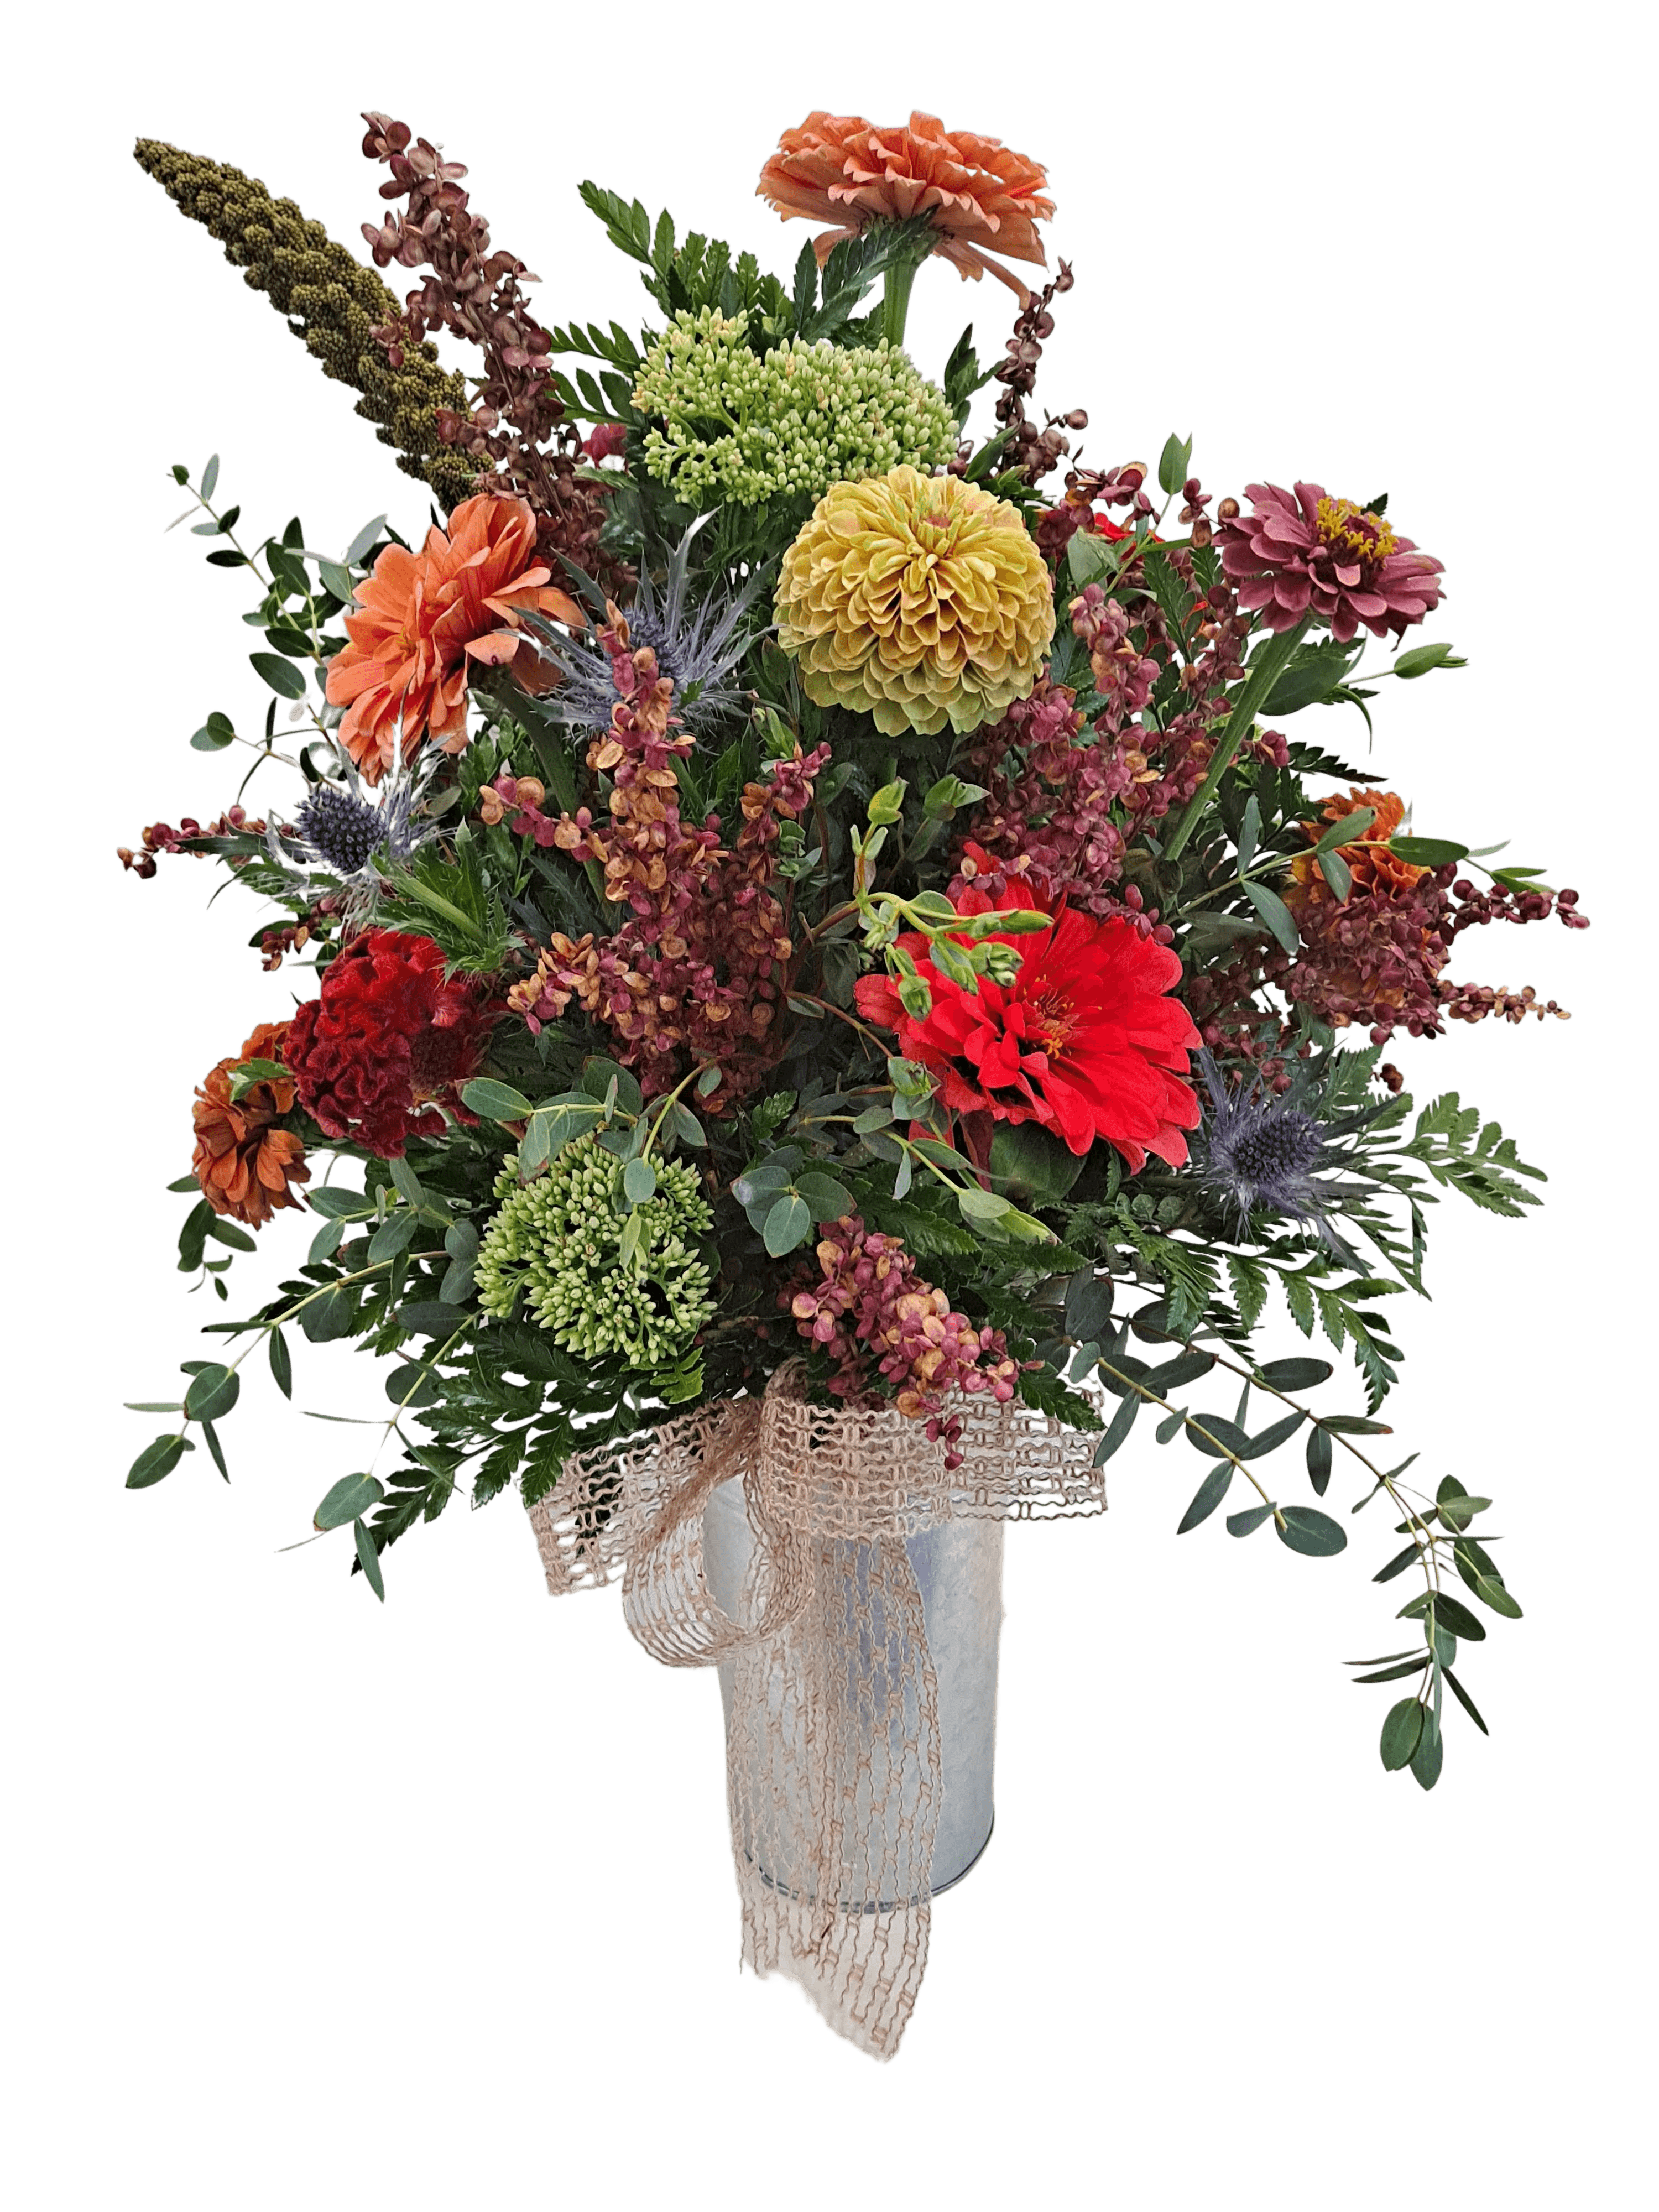 Woodsy Wishes flower arrangement